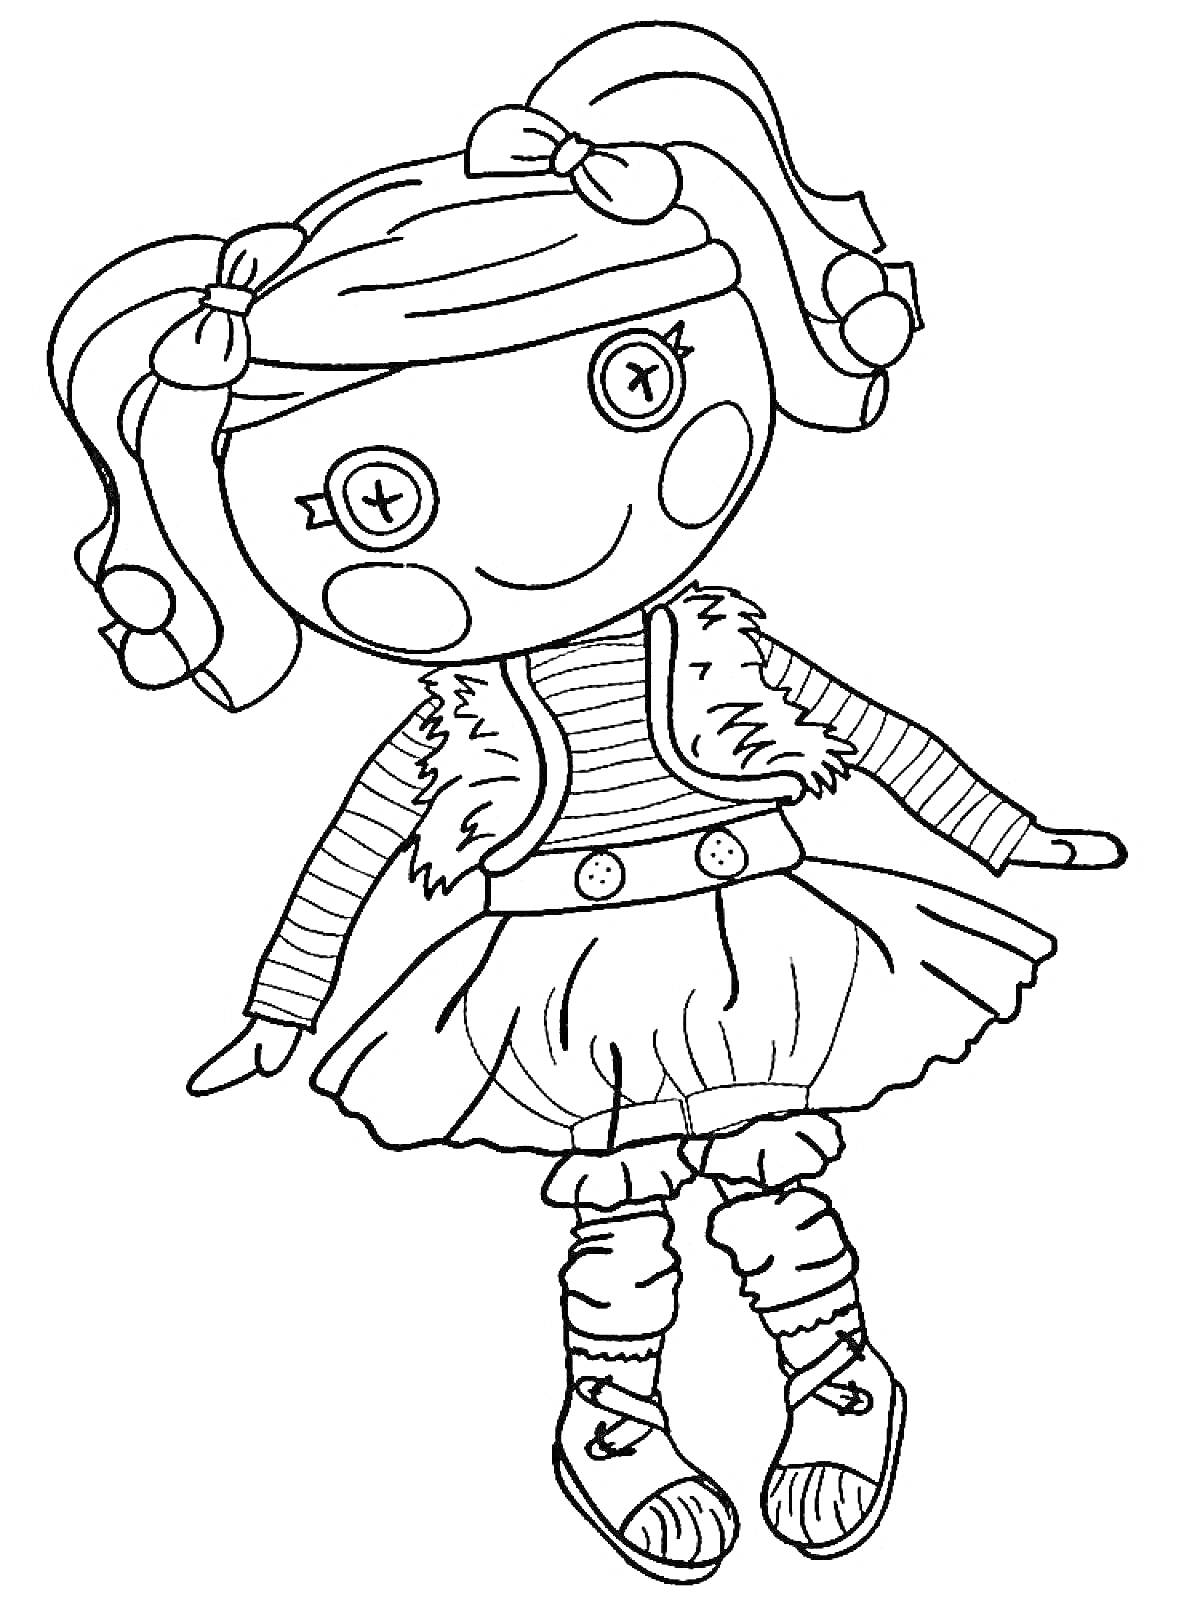 Раскраска Кукла с пуговицами вместо глаз в полосатой кофте, жилетке и платье, с двумя хвостиками и бантиками